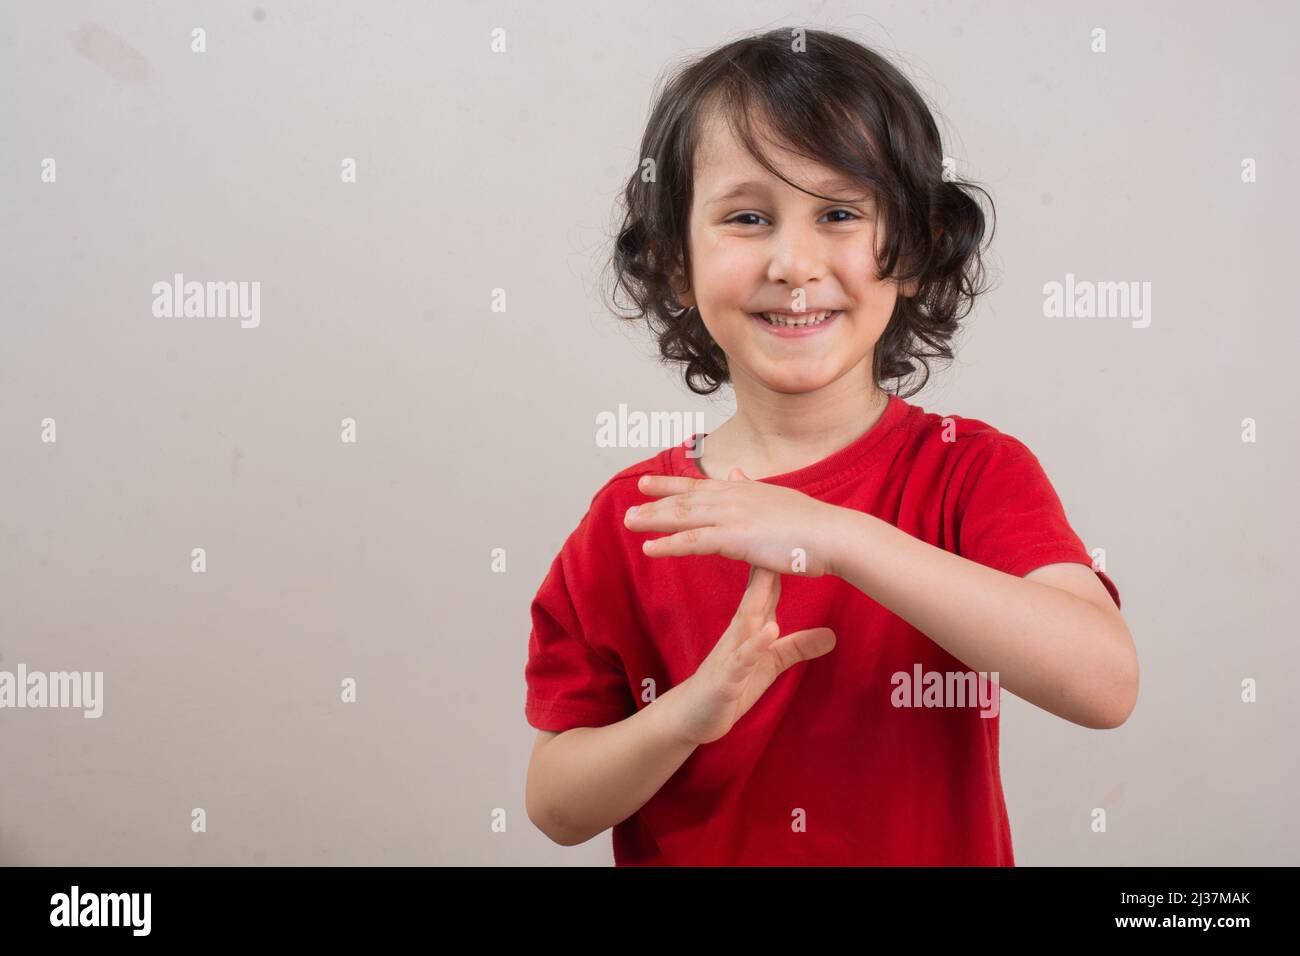 Niño sonriente haciendo una pausa o un gesto de la mano del tiempo del descanso. Foto de stock